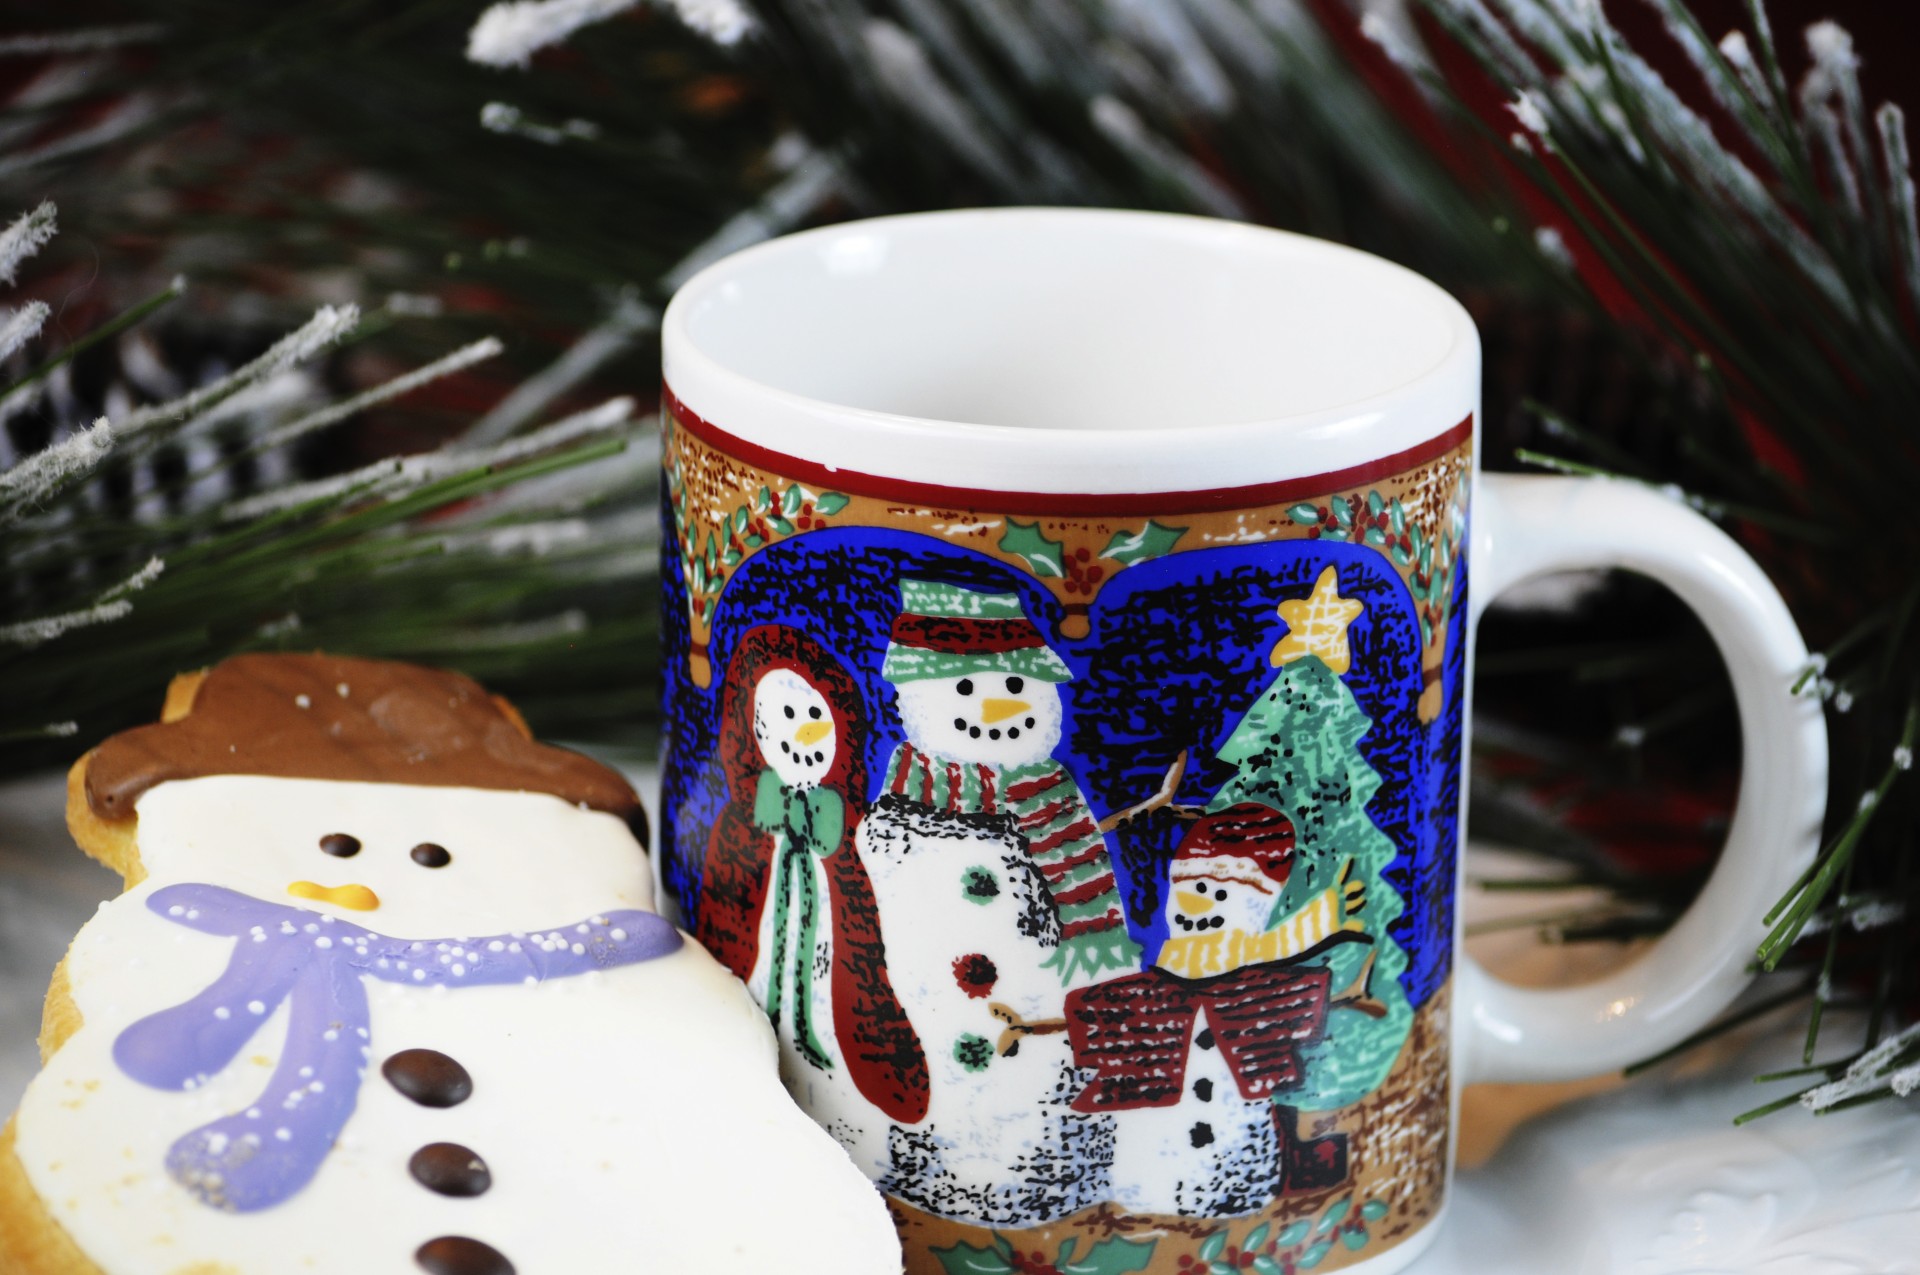 Snowman biscuits et tasse de café